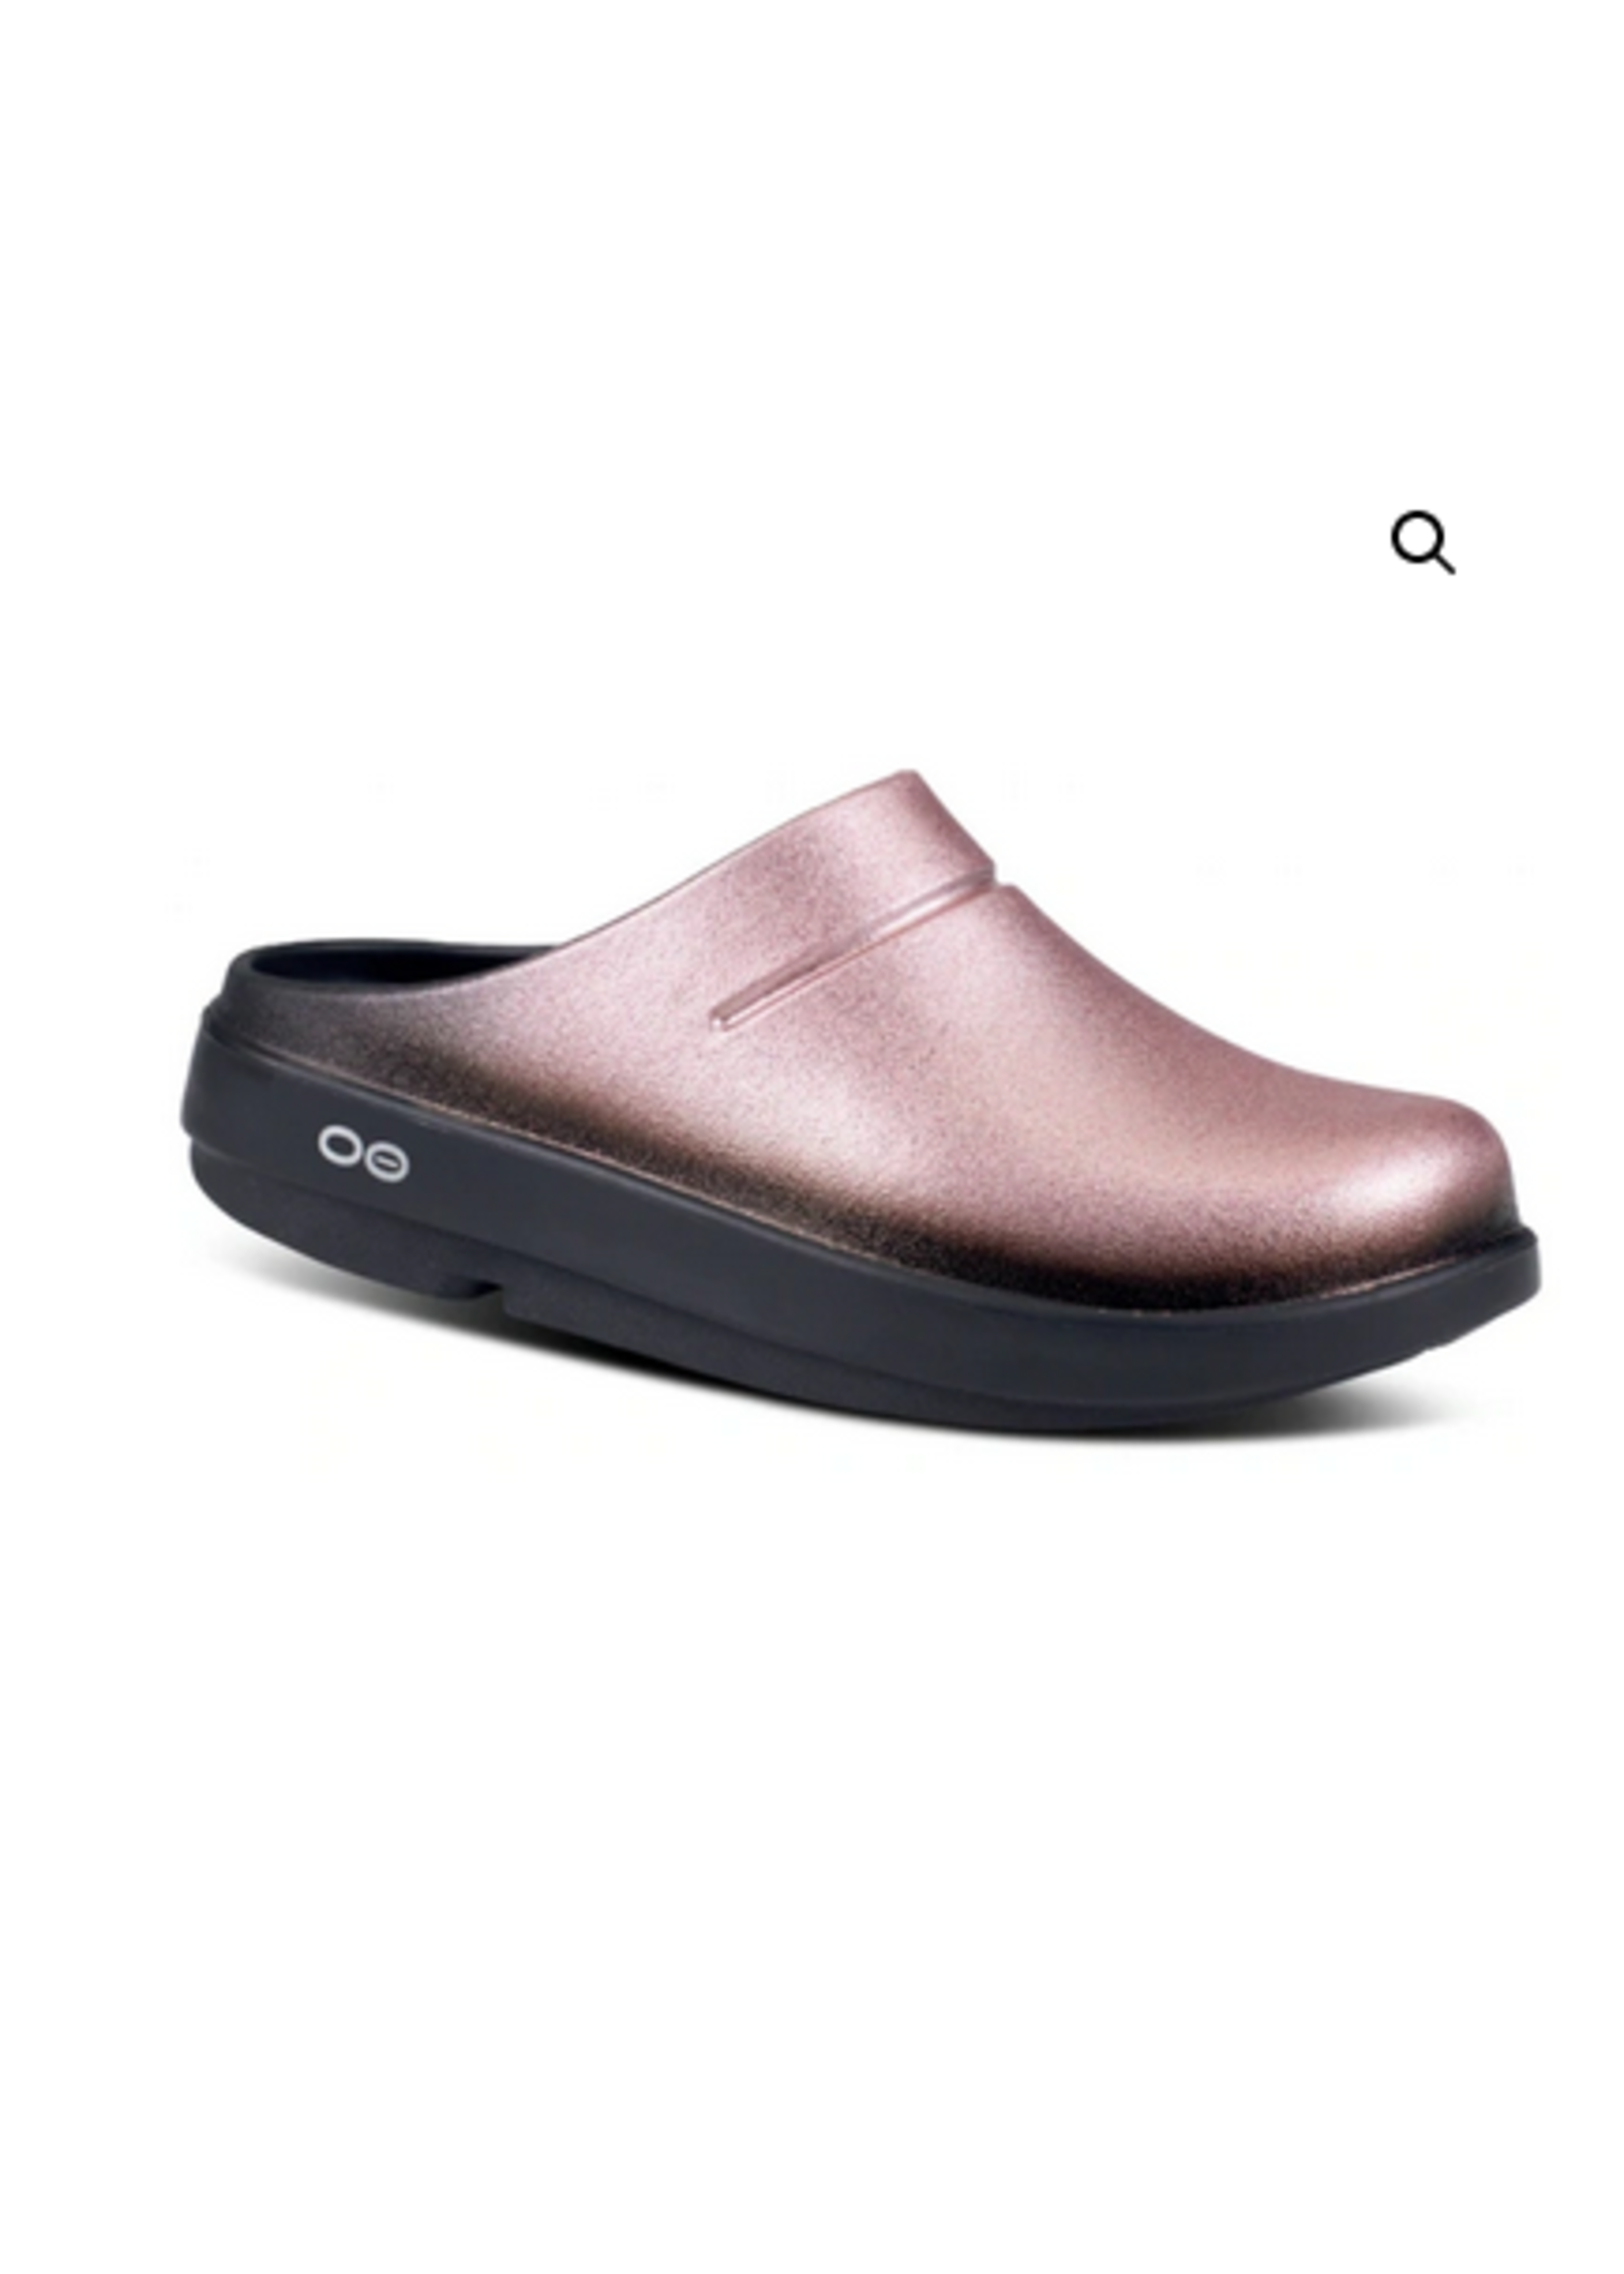 Oofos Oocloog Luxe Lucha's Comfort Footwear